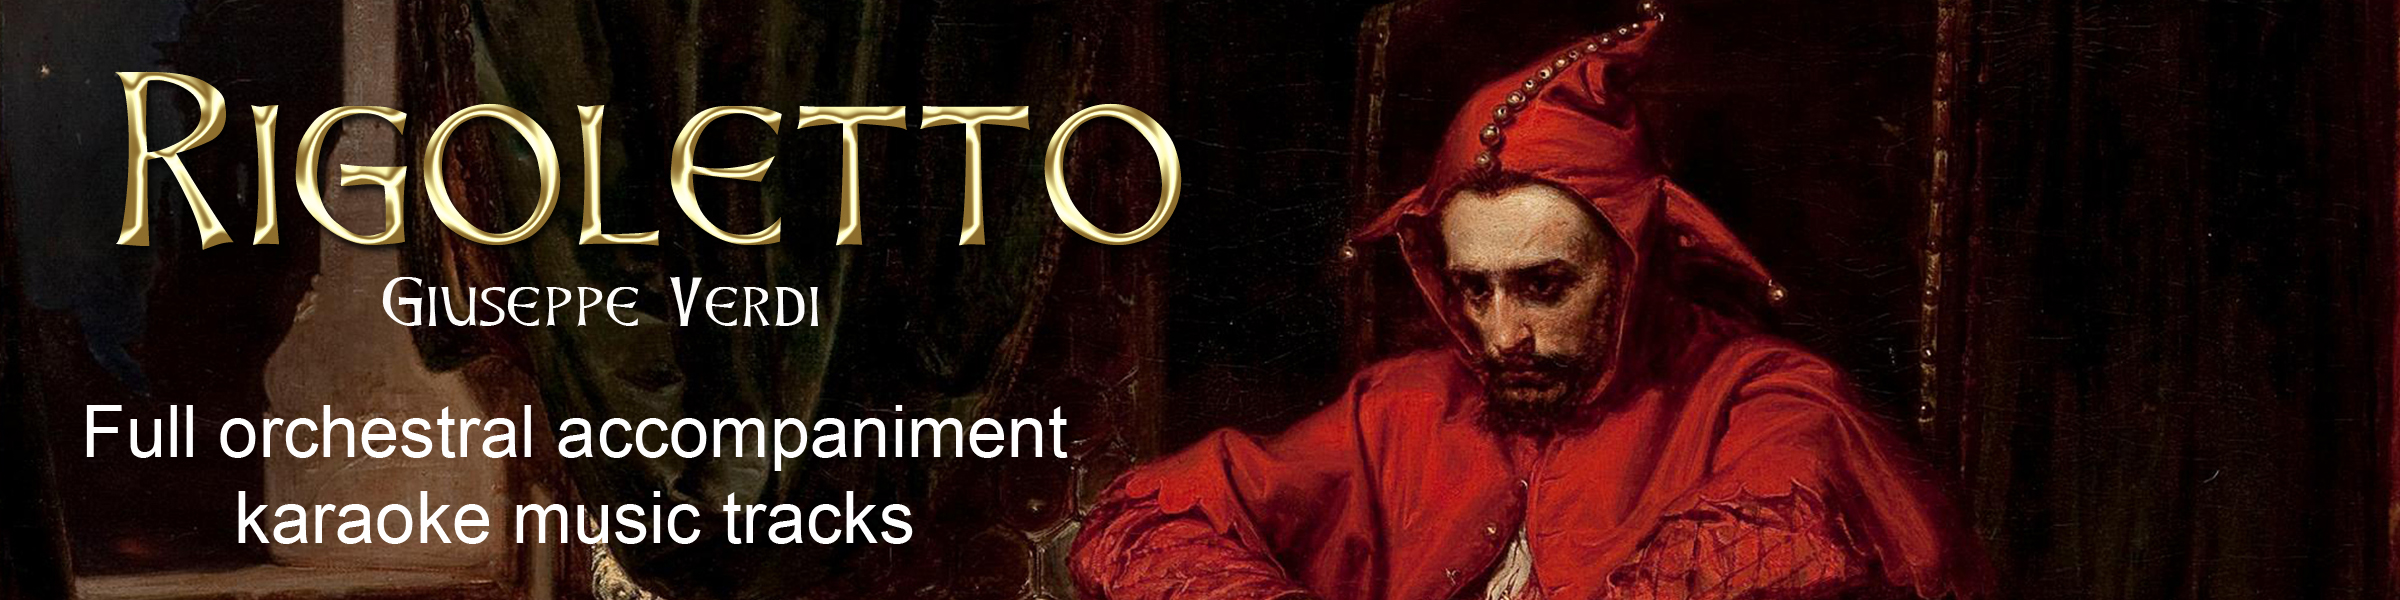 Rigoletto, Complete Opera, Full Orchestral Accompaniment (karaoke) tracks